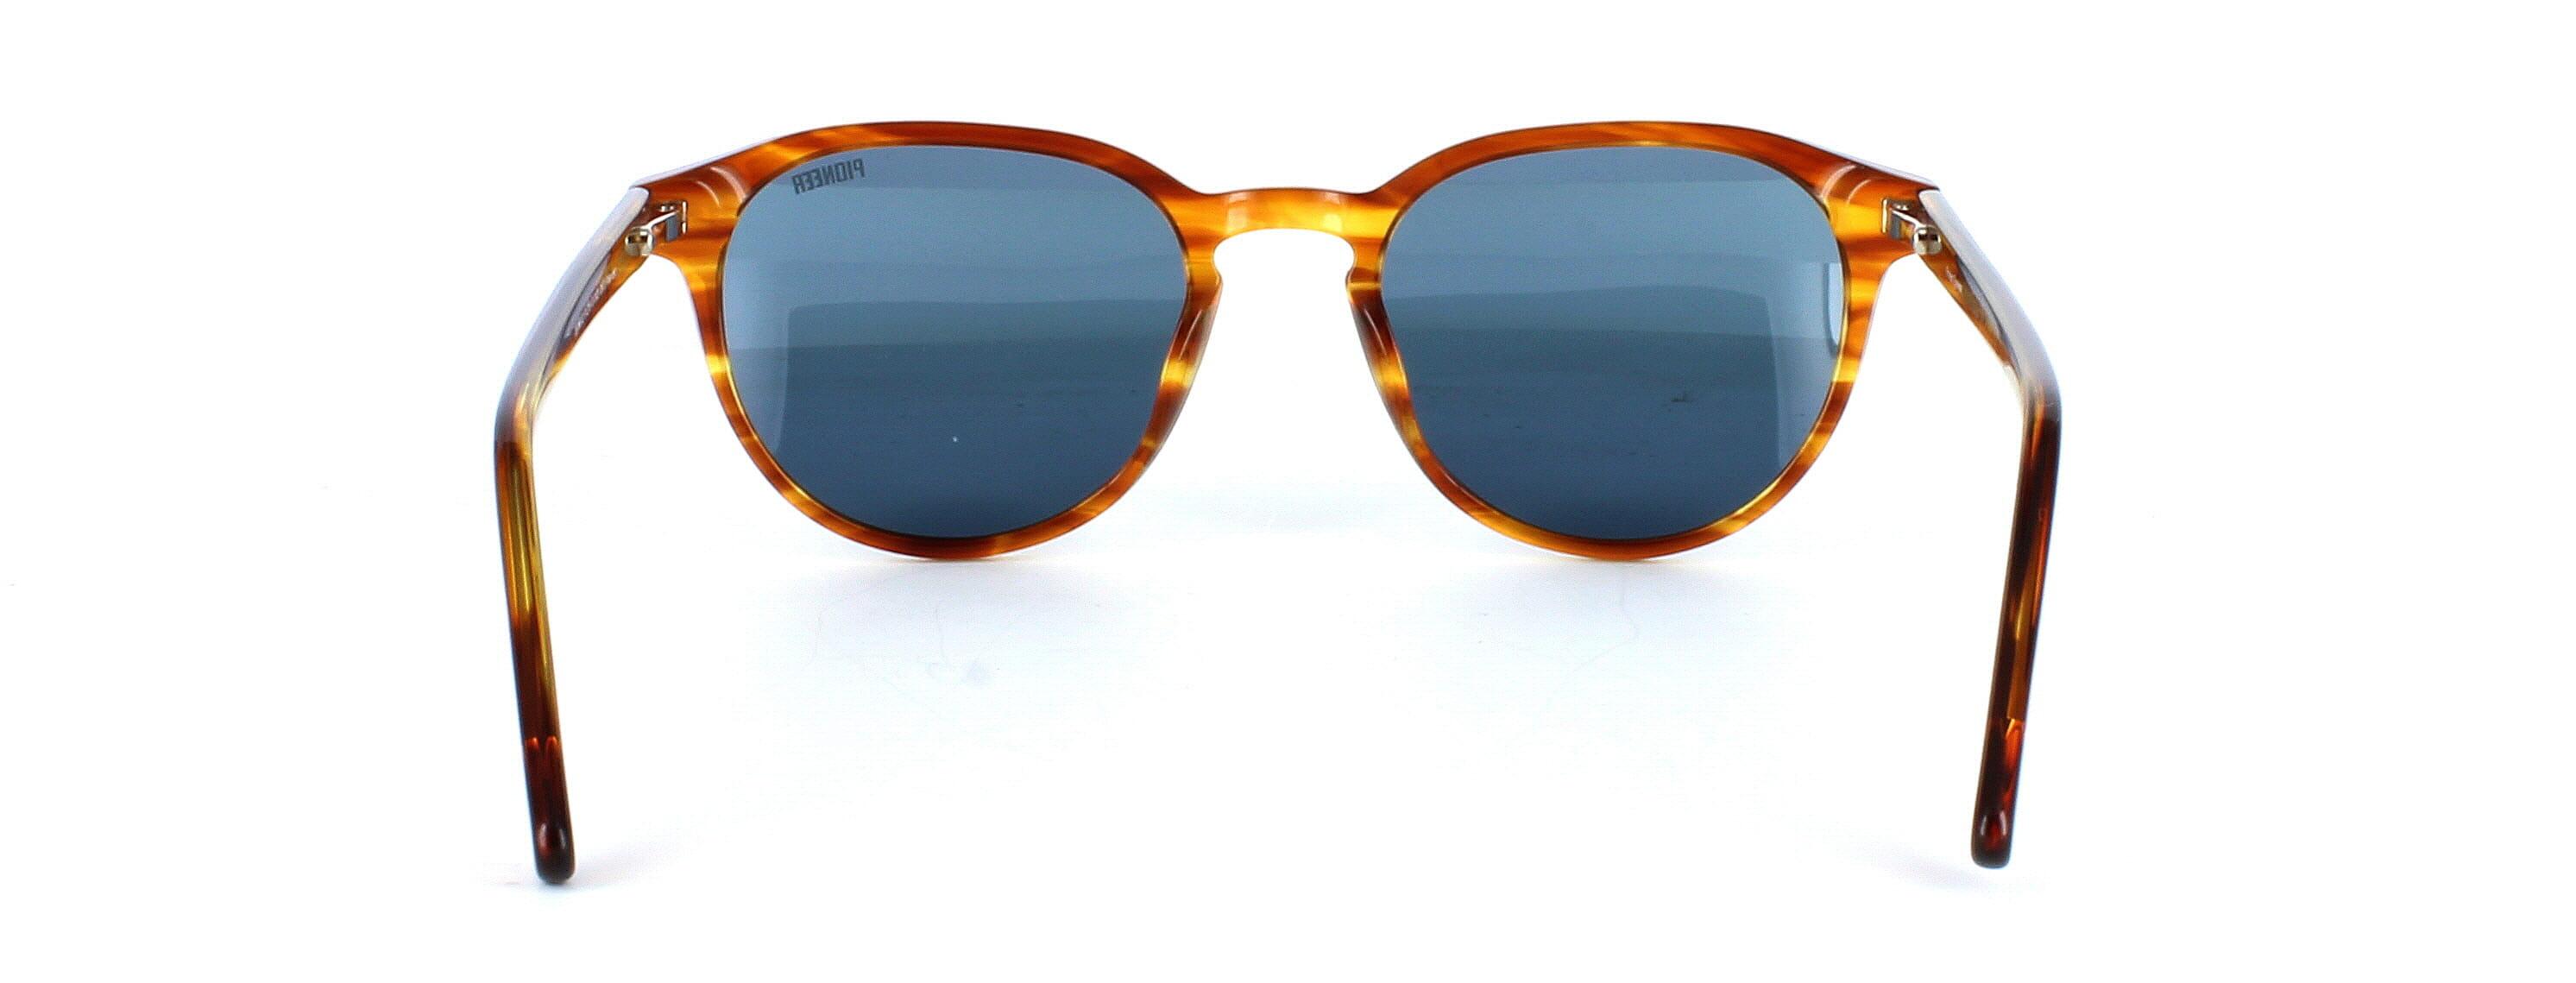 Memphis - Ladies round shaped acetate sunglasses in tortoise - image view 3